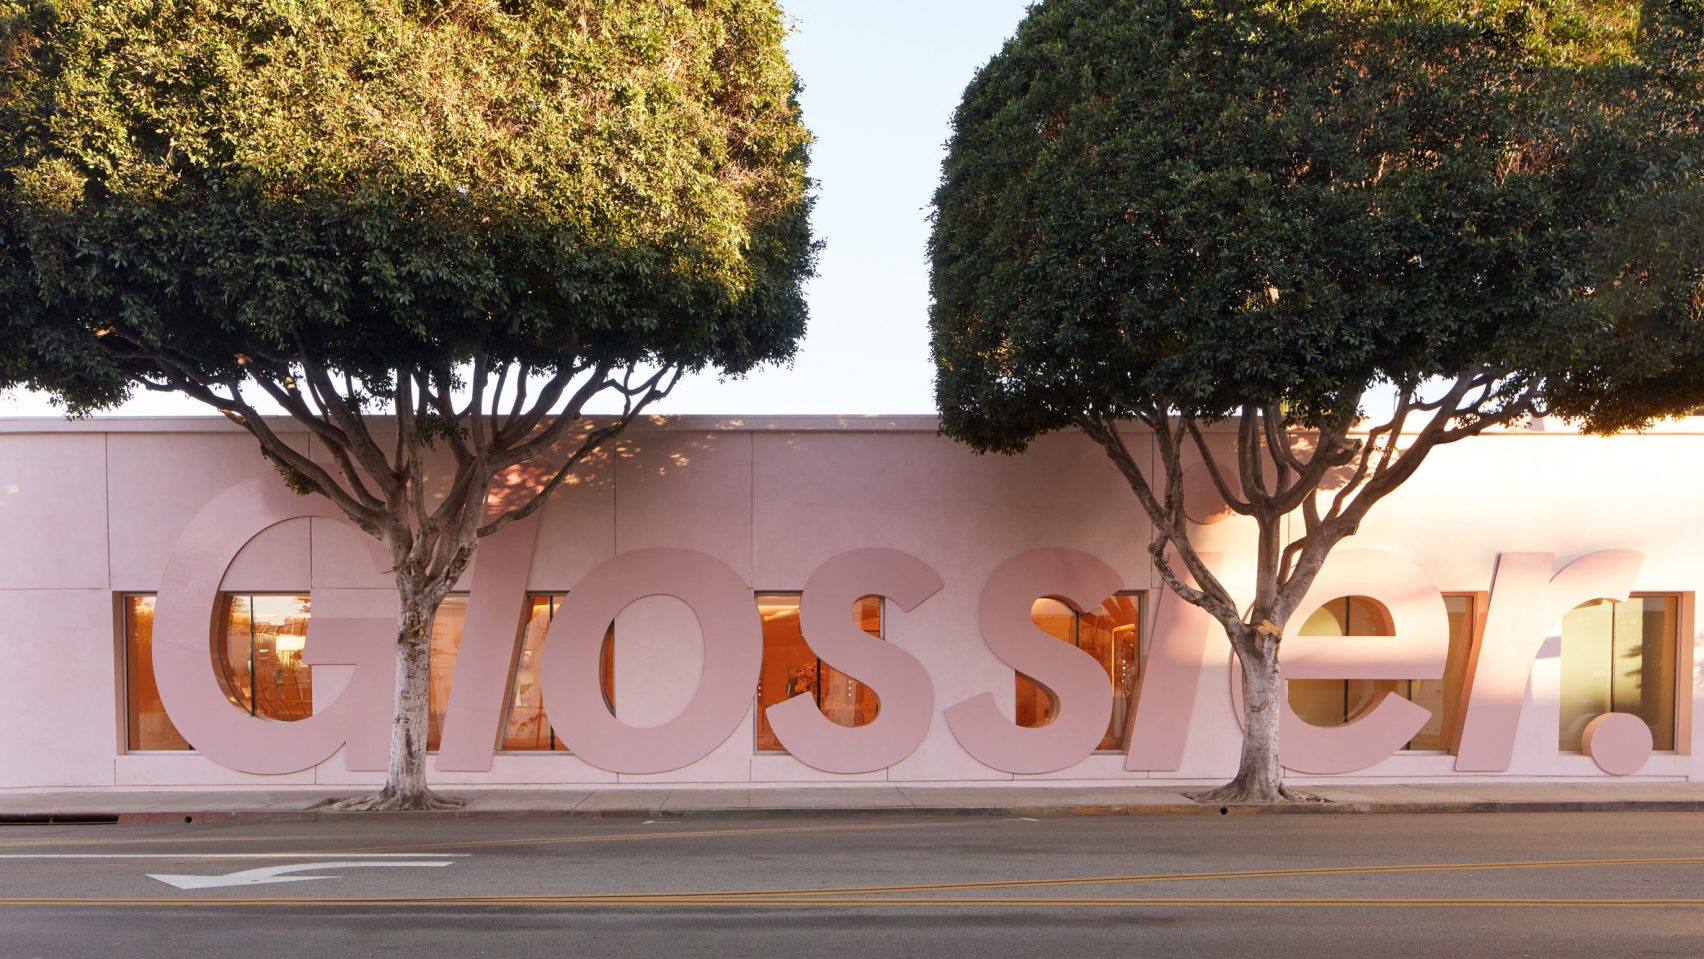 Thương hiệu mỹ phẩm Glossier nổi tiếng vừa khai trương một cửa hàng mới tại Los Angeles (Hoa Kỳ) với sự đầu tư cực kỳ hoành tráng.